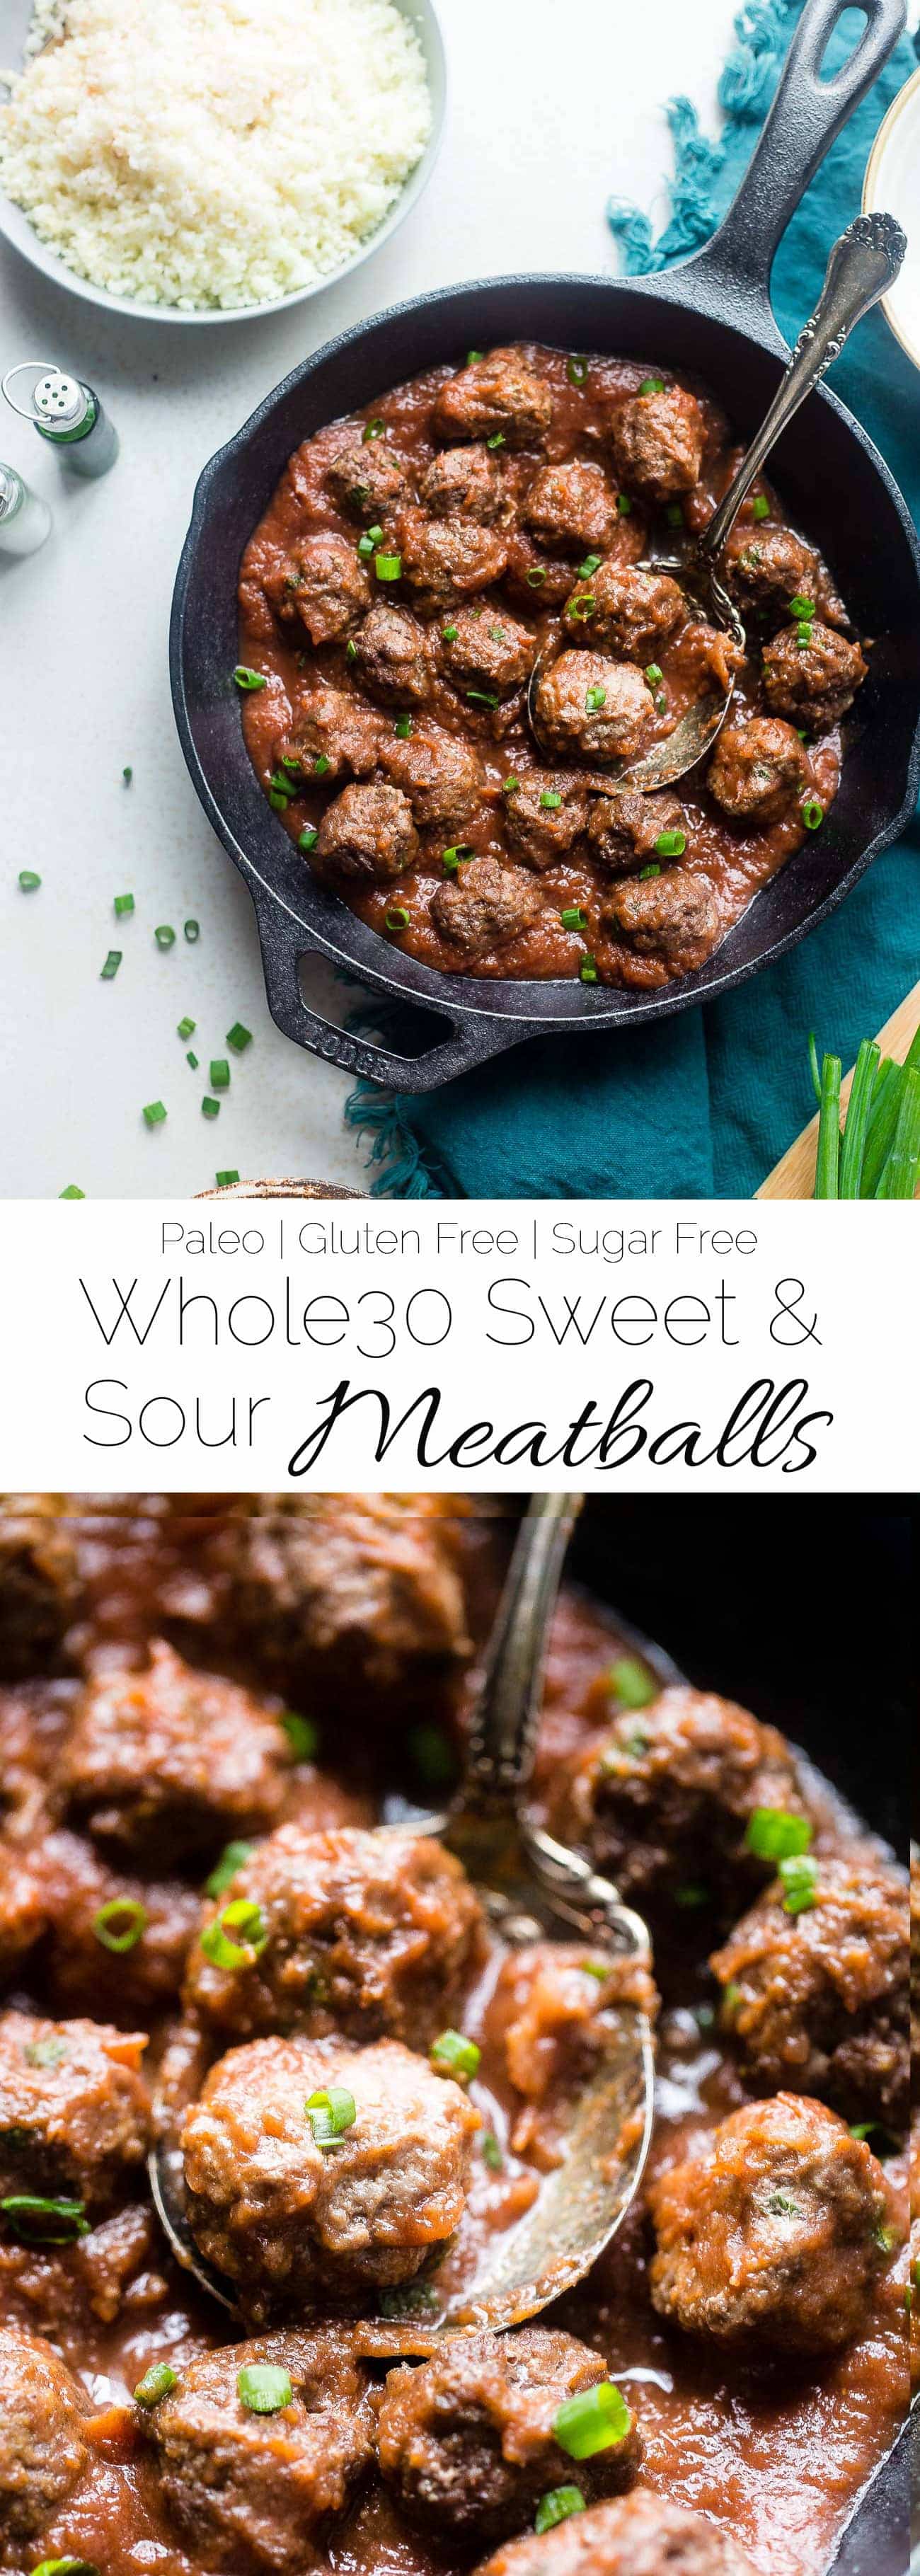 Whole30 Meatballs Sweet and Sour - این کوفته های ساده پالئو یک بازسازی سالم از یک دستور غذای کلاسیک است که بدون گلوتن است و 30 مورد شکایت دارد!  آنها یک وعده غذایی در شب هستند که همه آن را دوست خواهند داشت!  |  Foodfaithfitness.com |  @FootballFootball